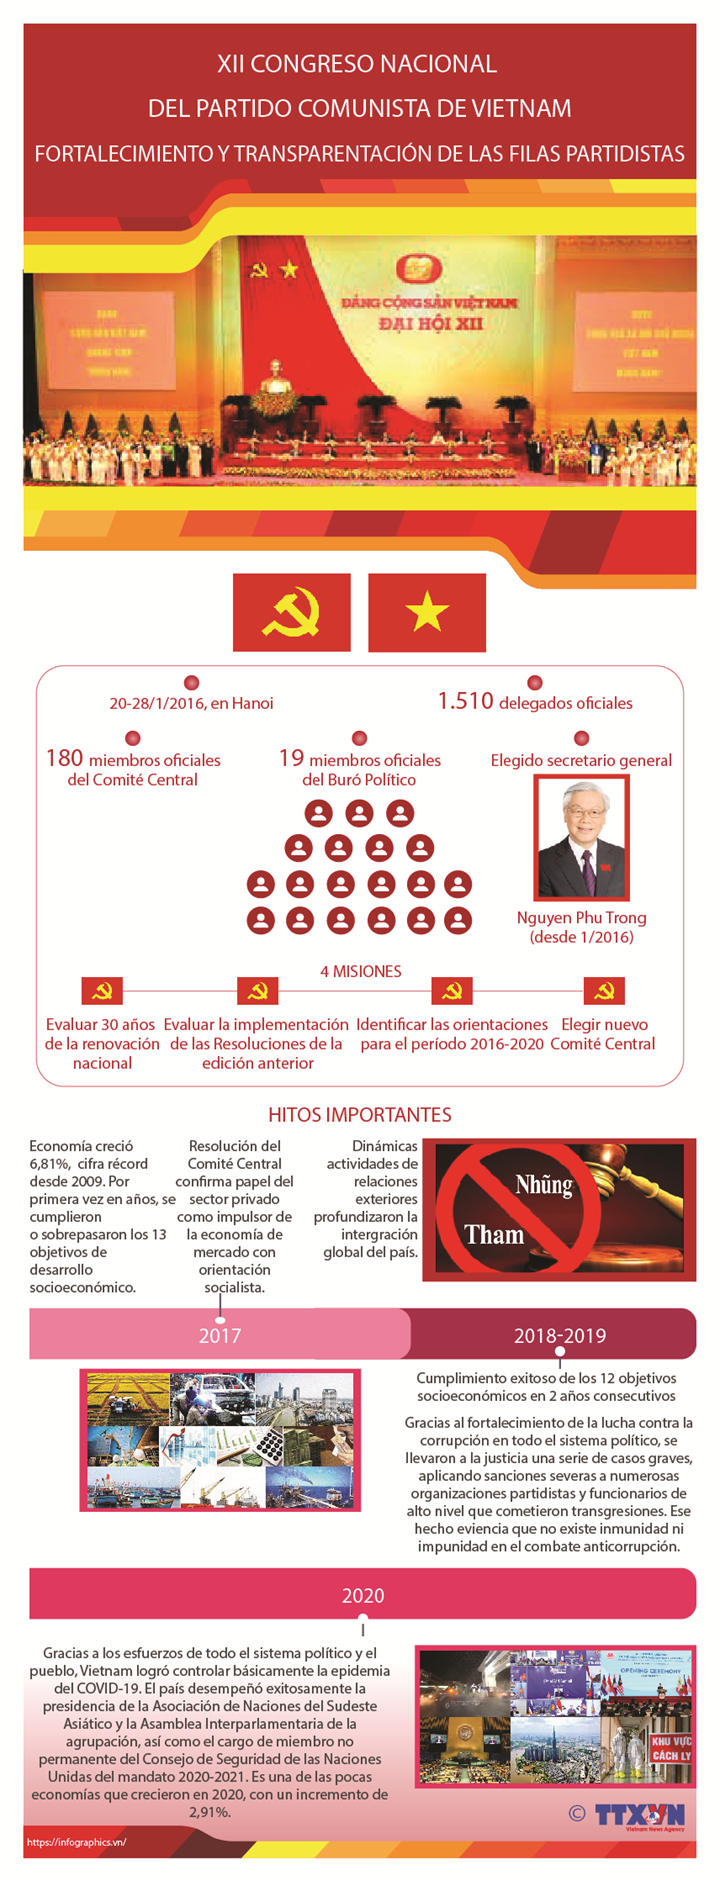 XII Congreso Nacional del Partido Comunista de Vietnam: Fortalecimiento y transparentación de filas partidistas